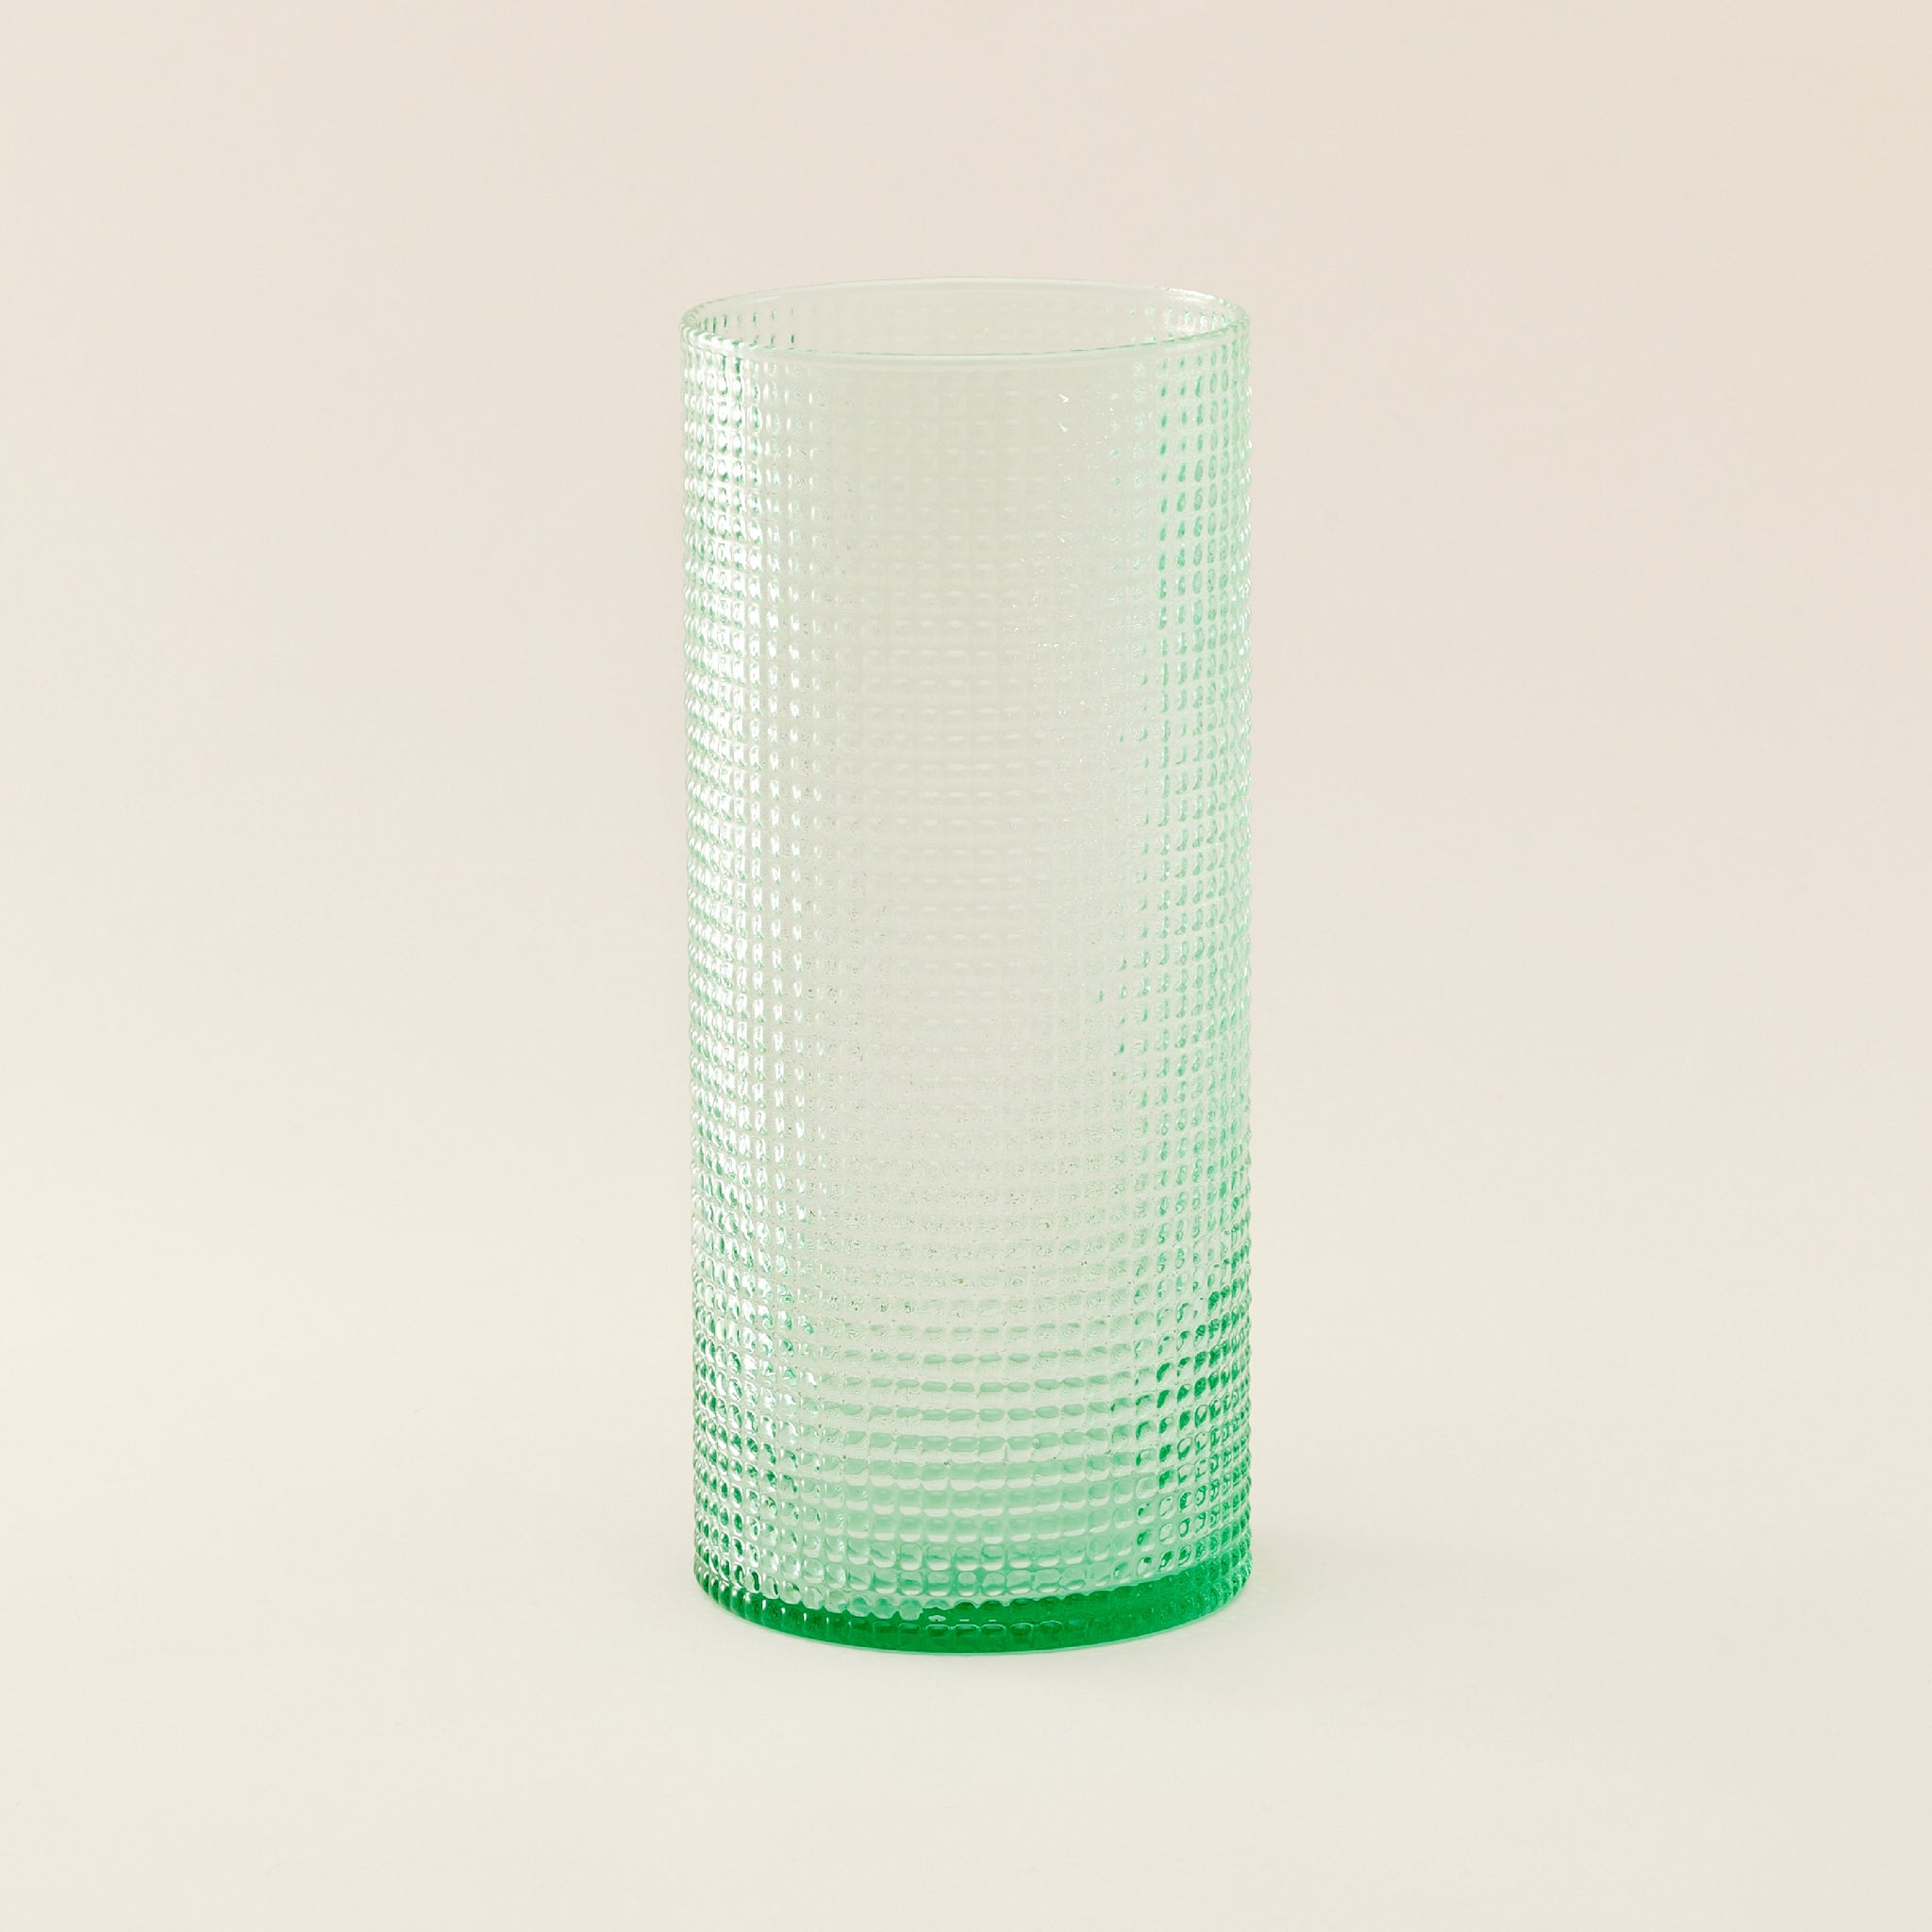 Eastern Glass Vase | แจกัน